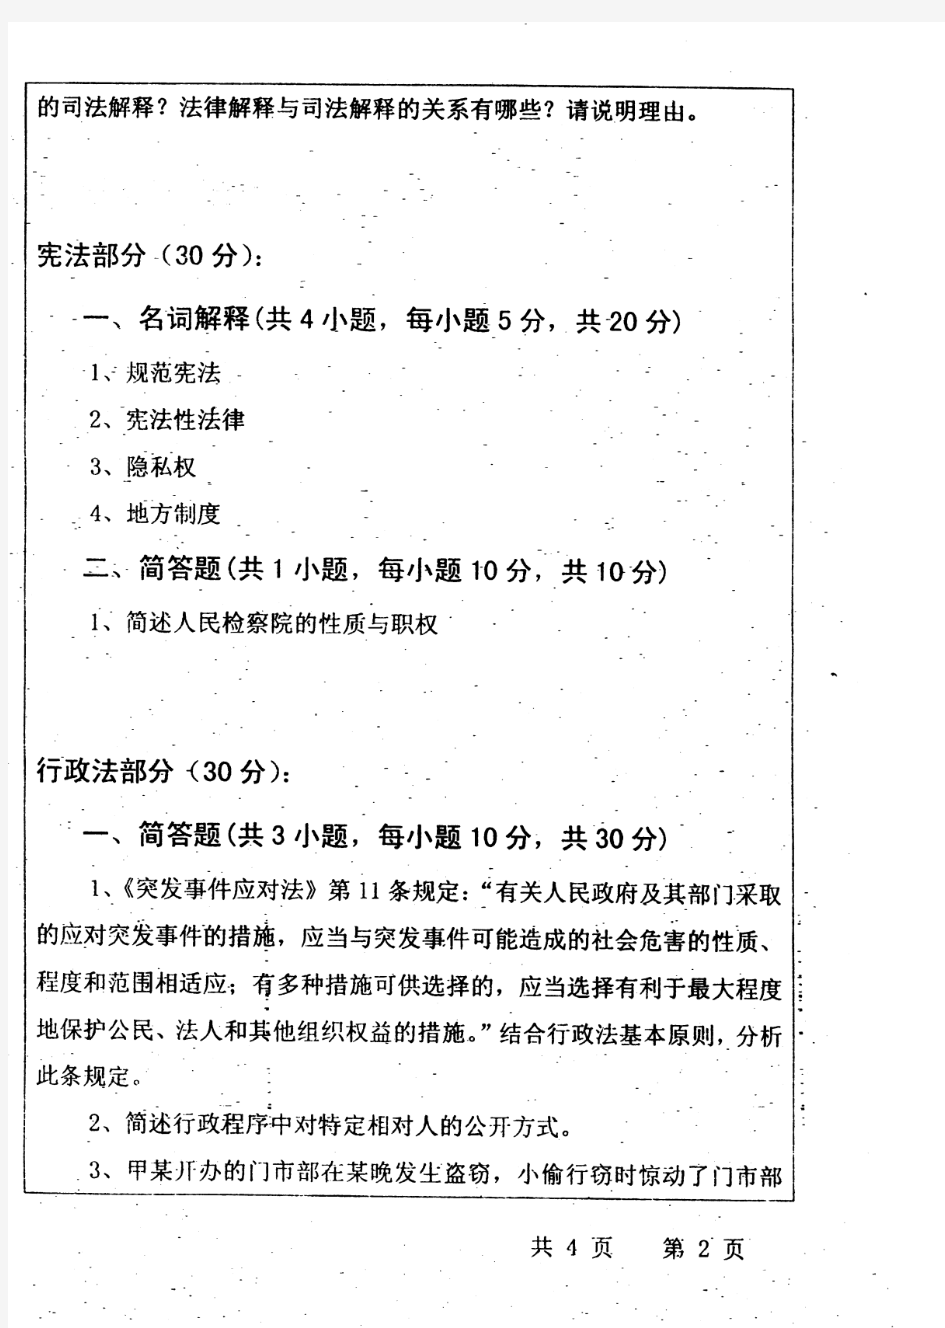 2011年武汉大学考研真题622法学综合